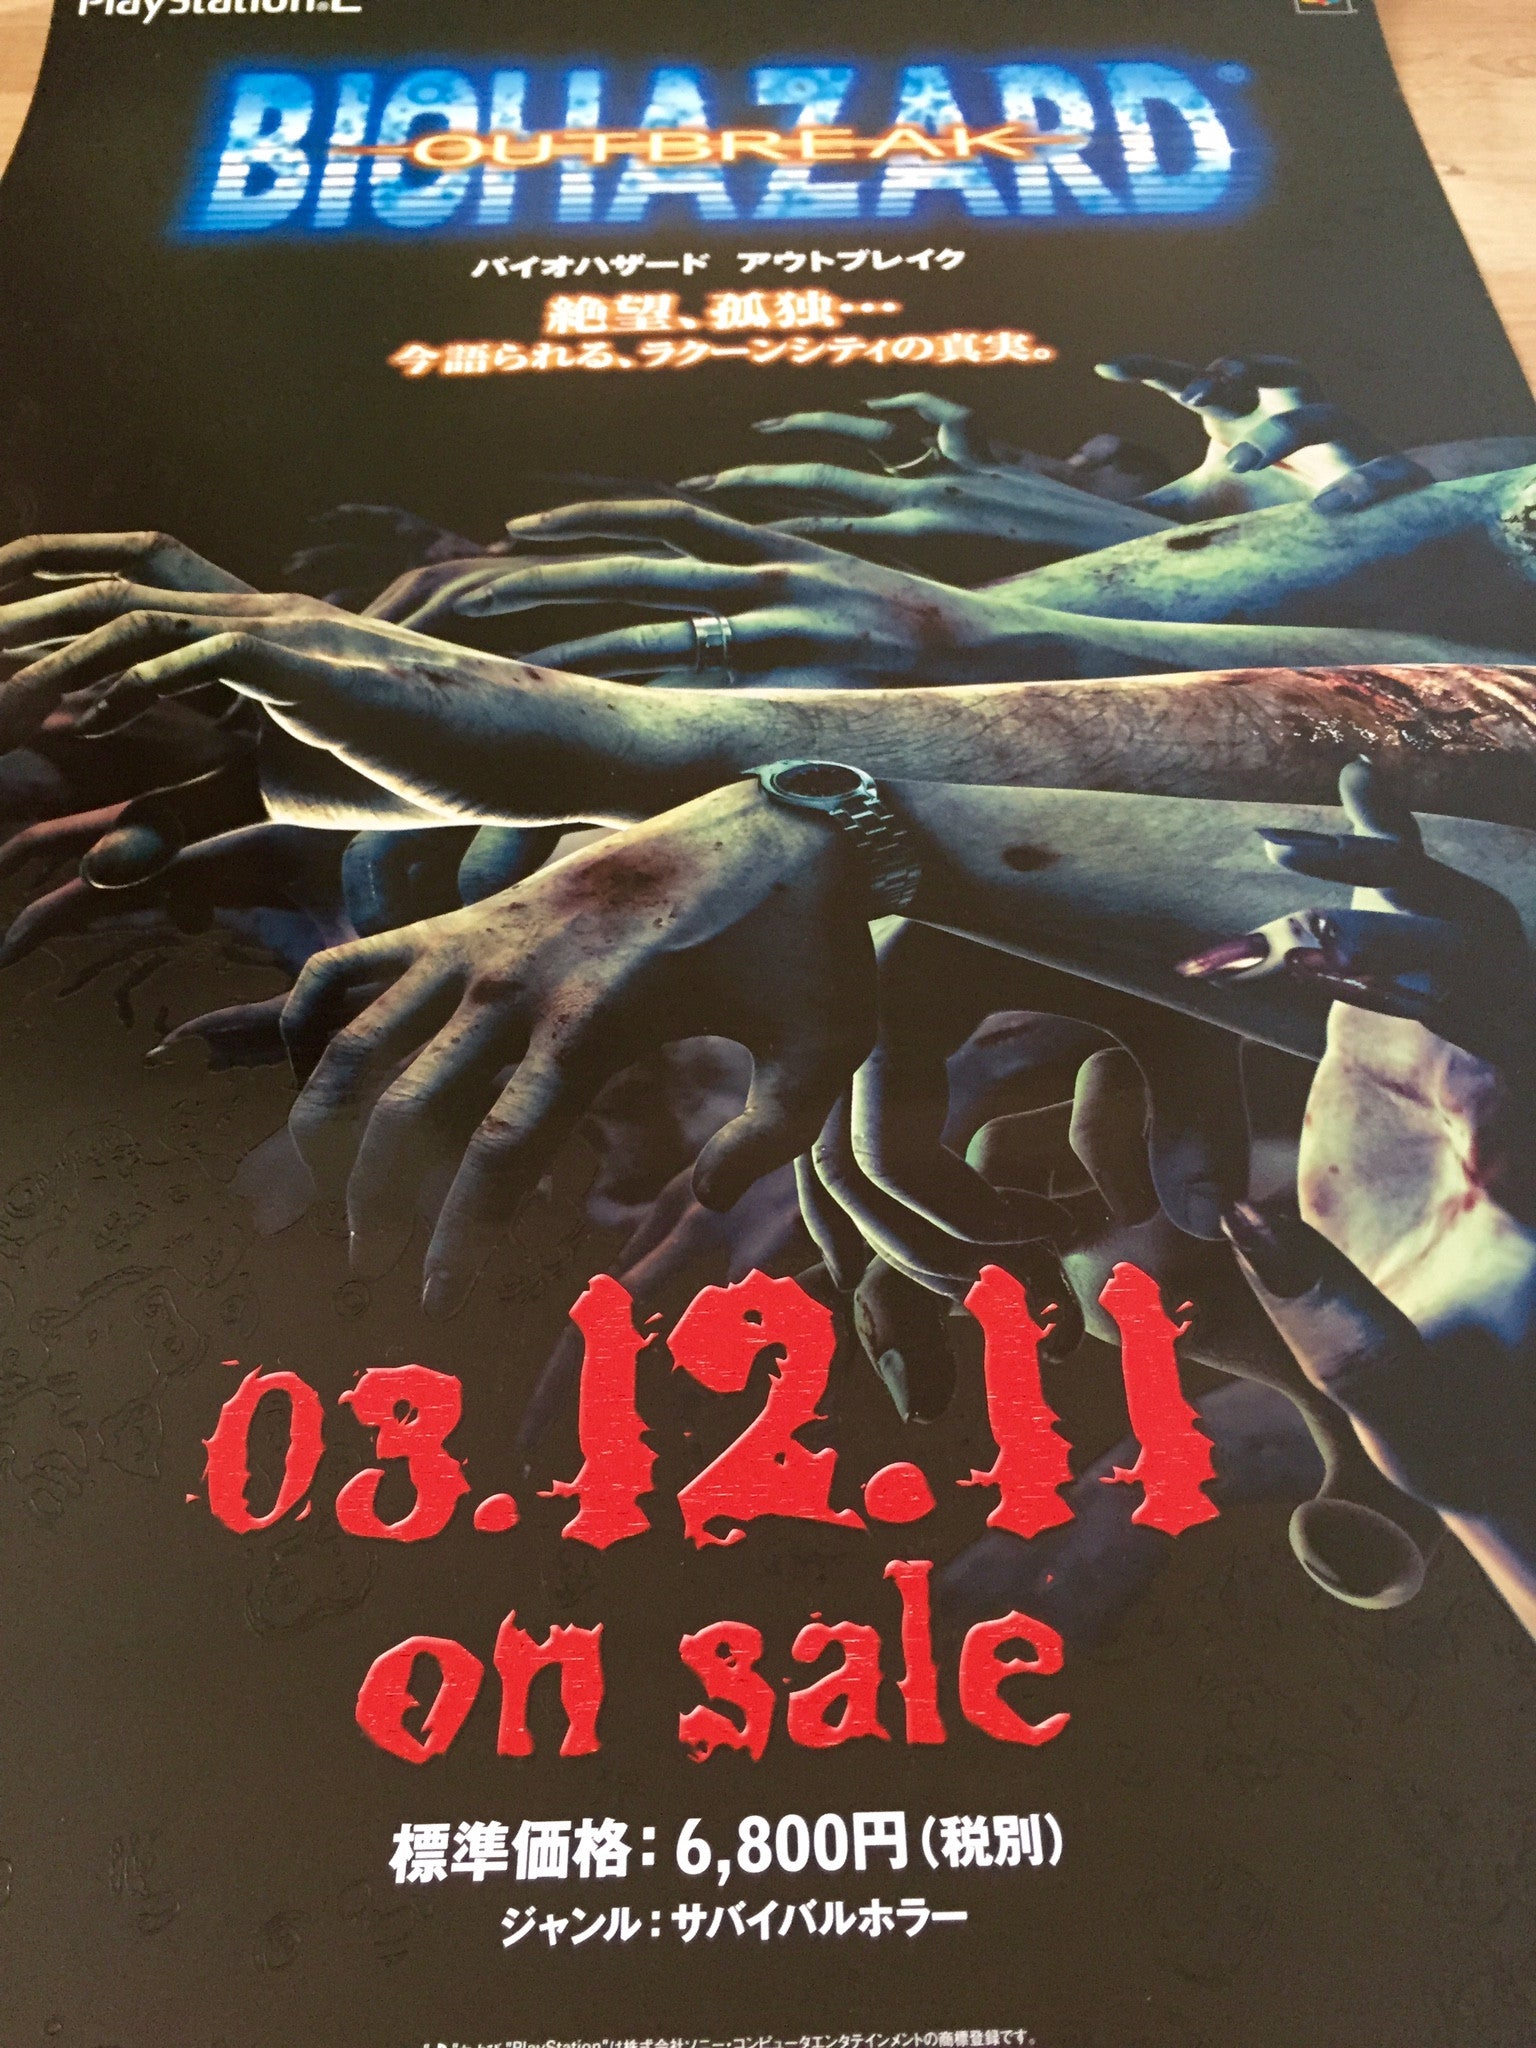 Resident Evil: Outbreak (B2) Japanese Promotional Poster #1